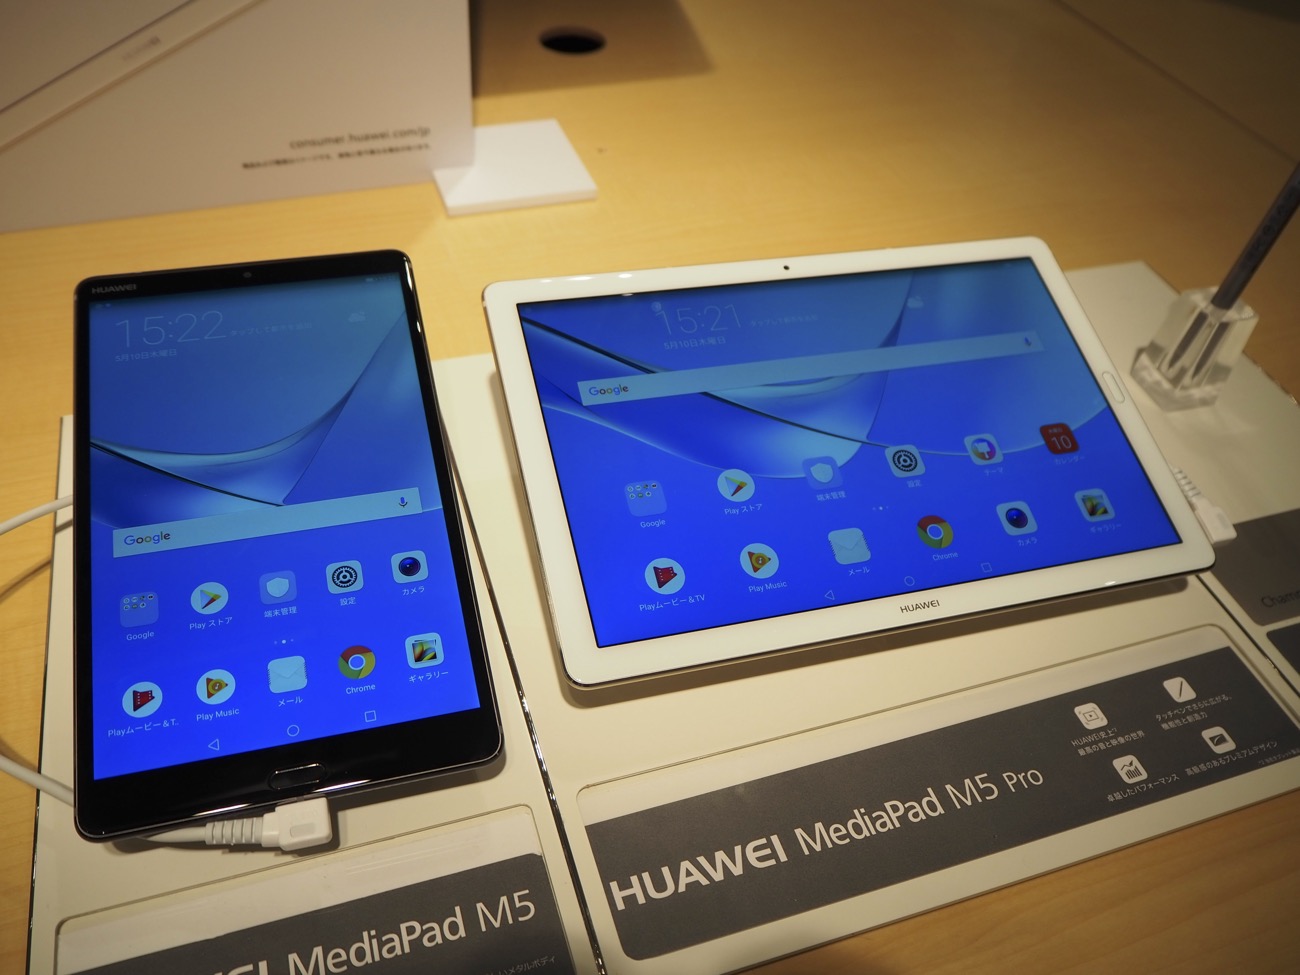 8型の 丁度いいサイズ感 が魅力 Huawei Mediapad M5シリーズ 10型はペン同梱 Engadget 日本版